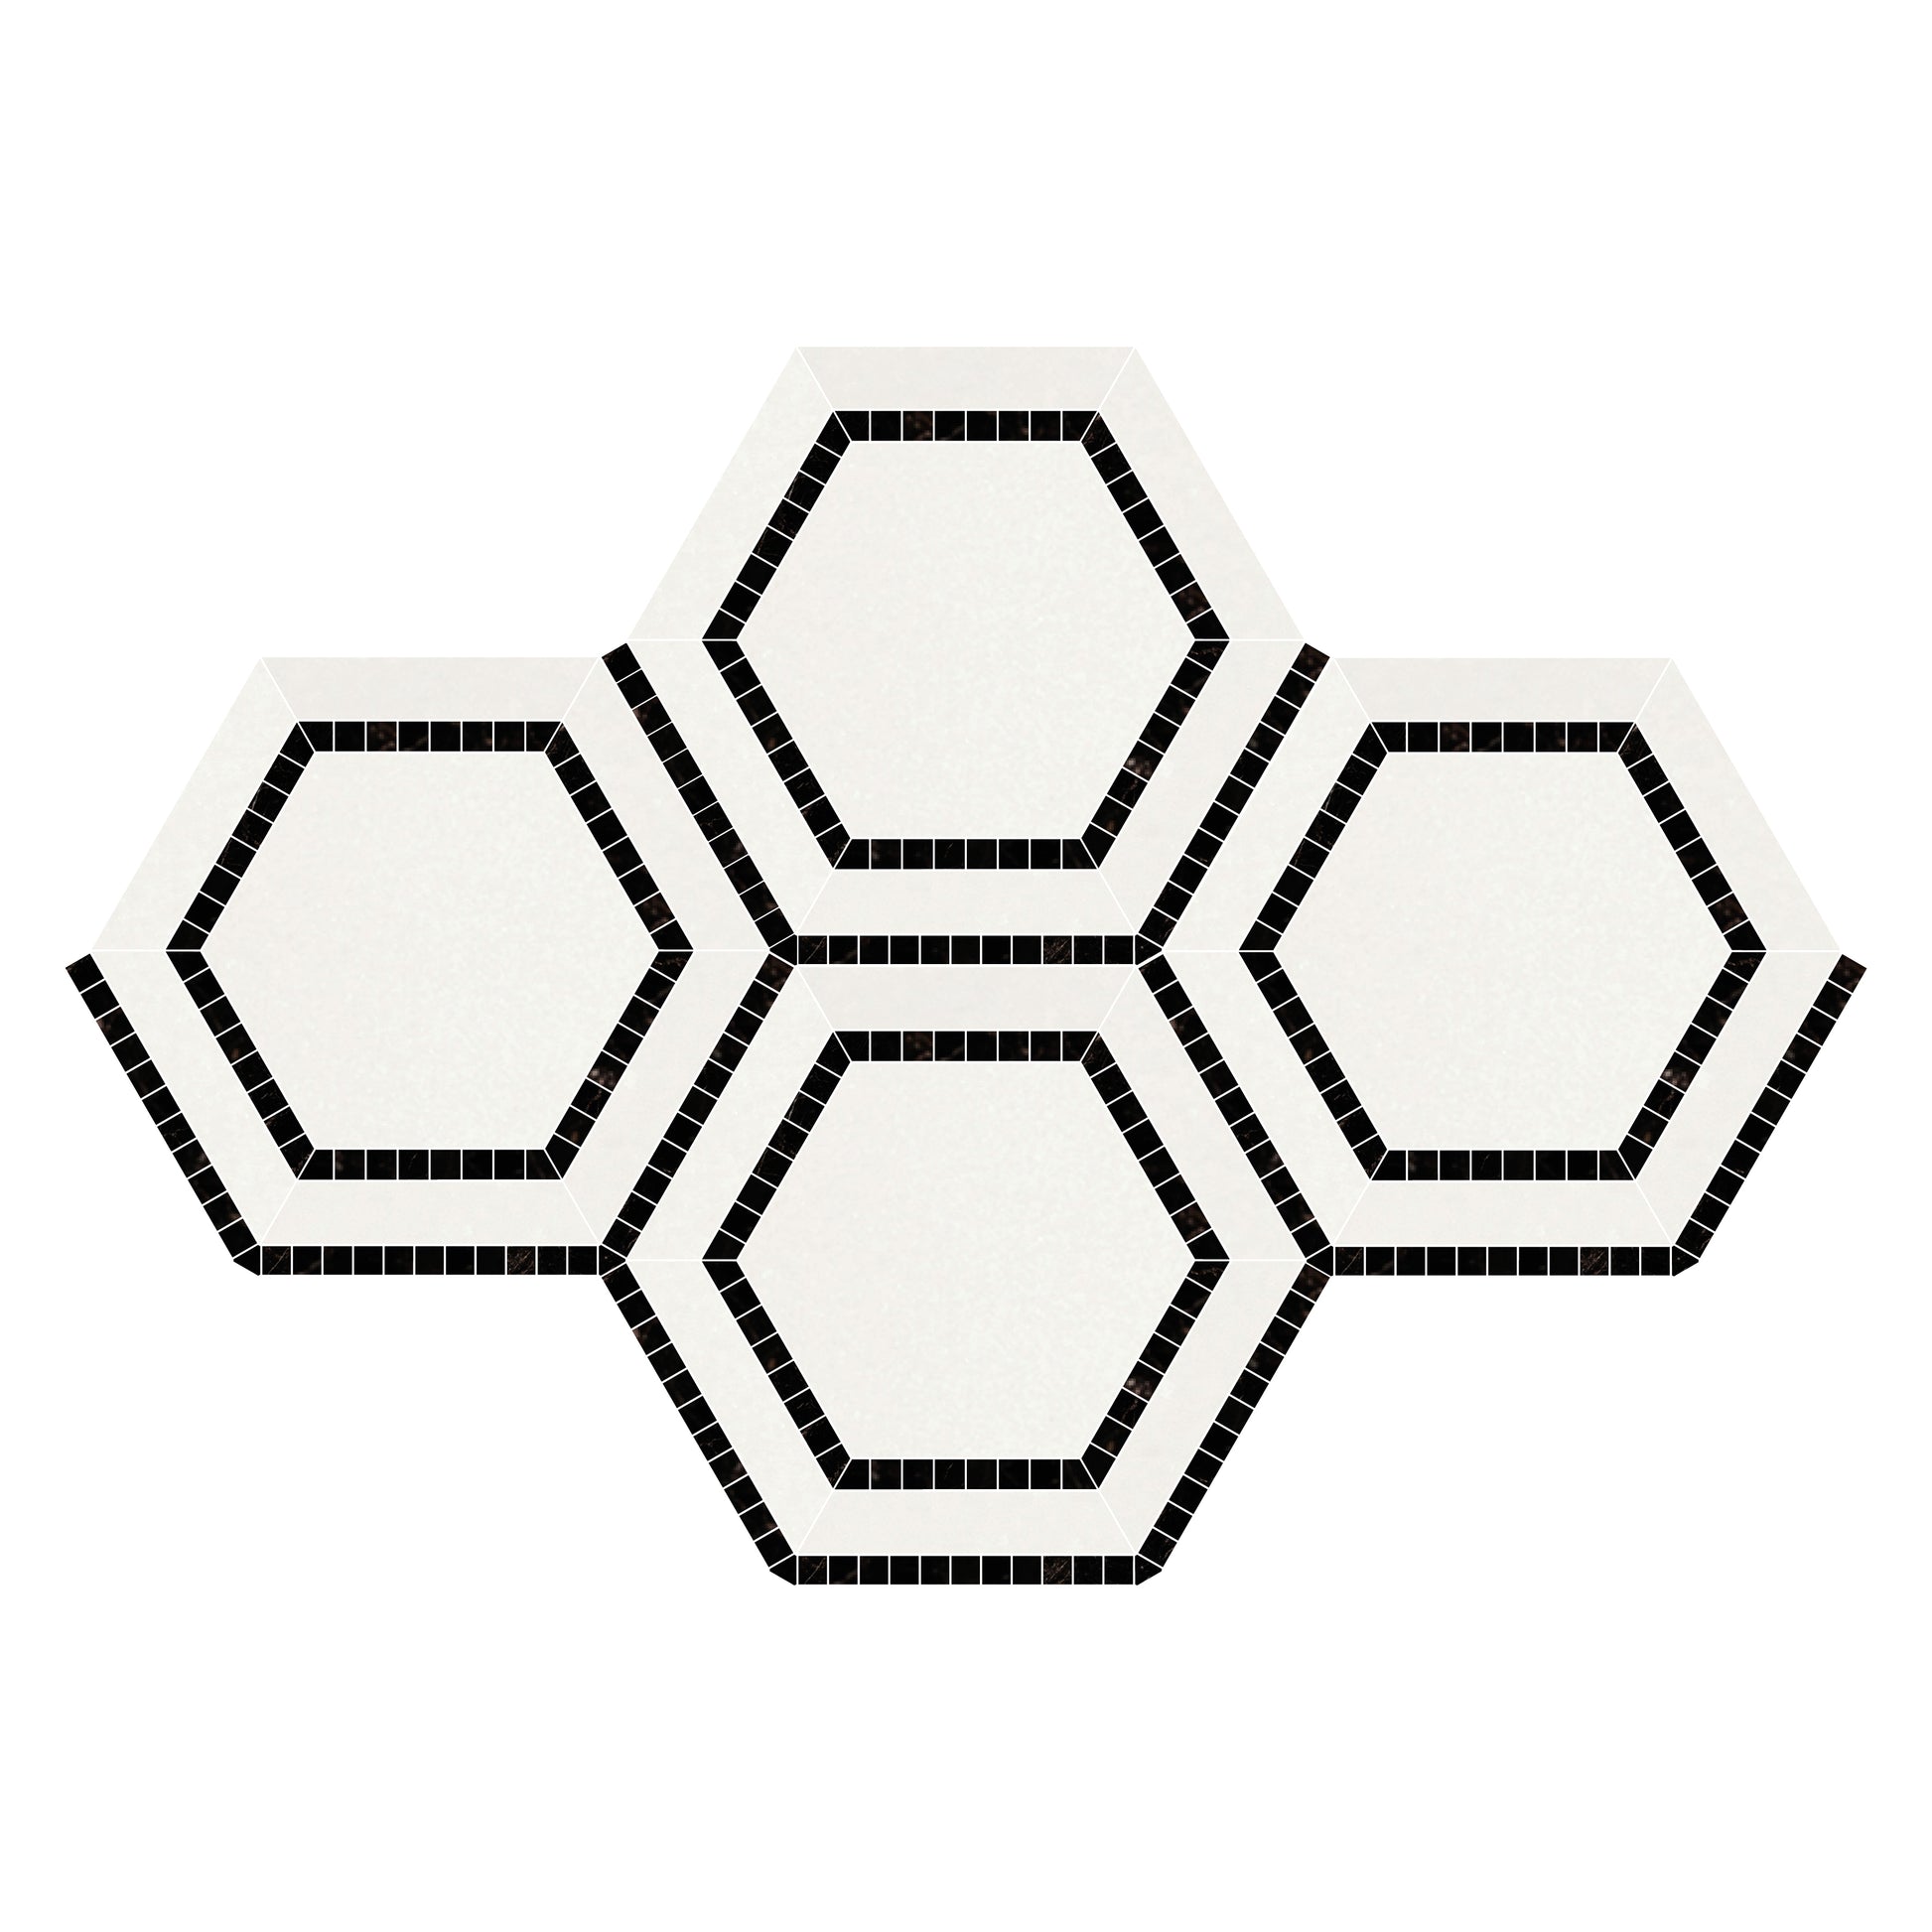 Thassos White Hexagon Combination w/ Black Mosaic Tile 5x5"